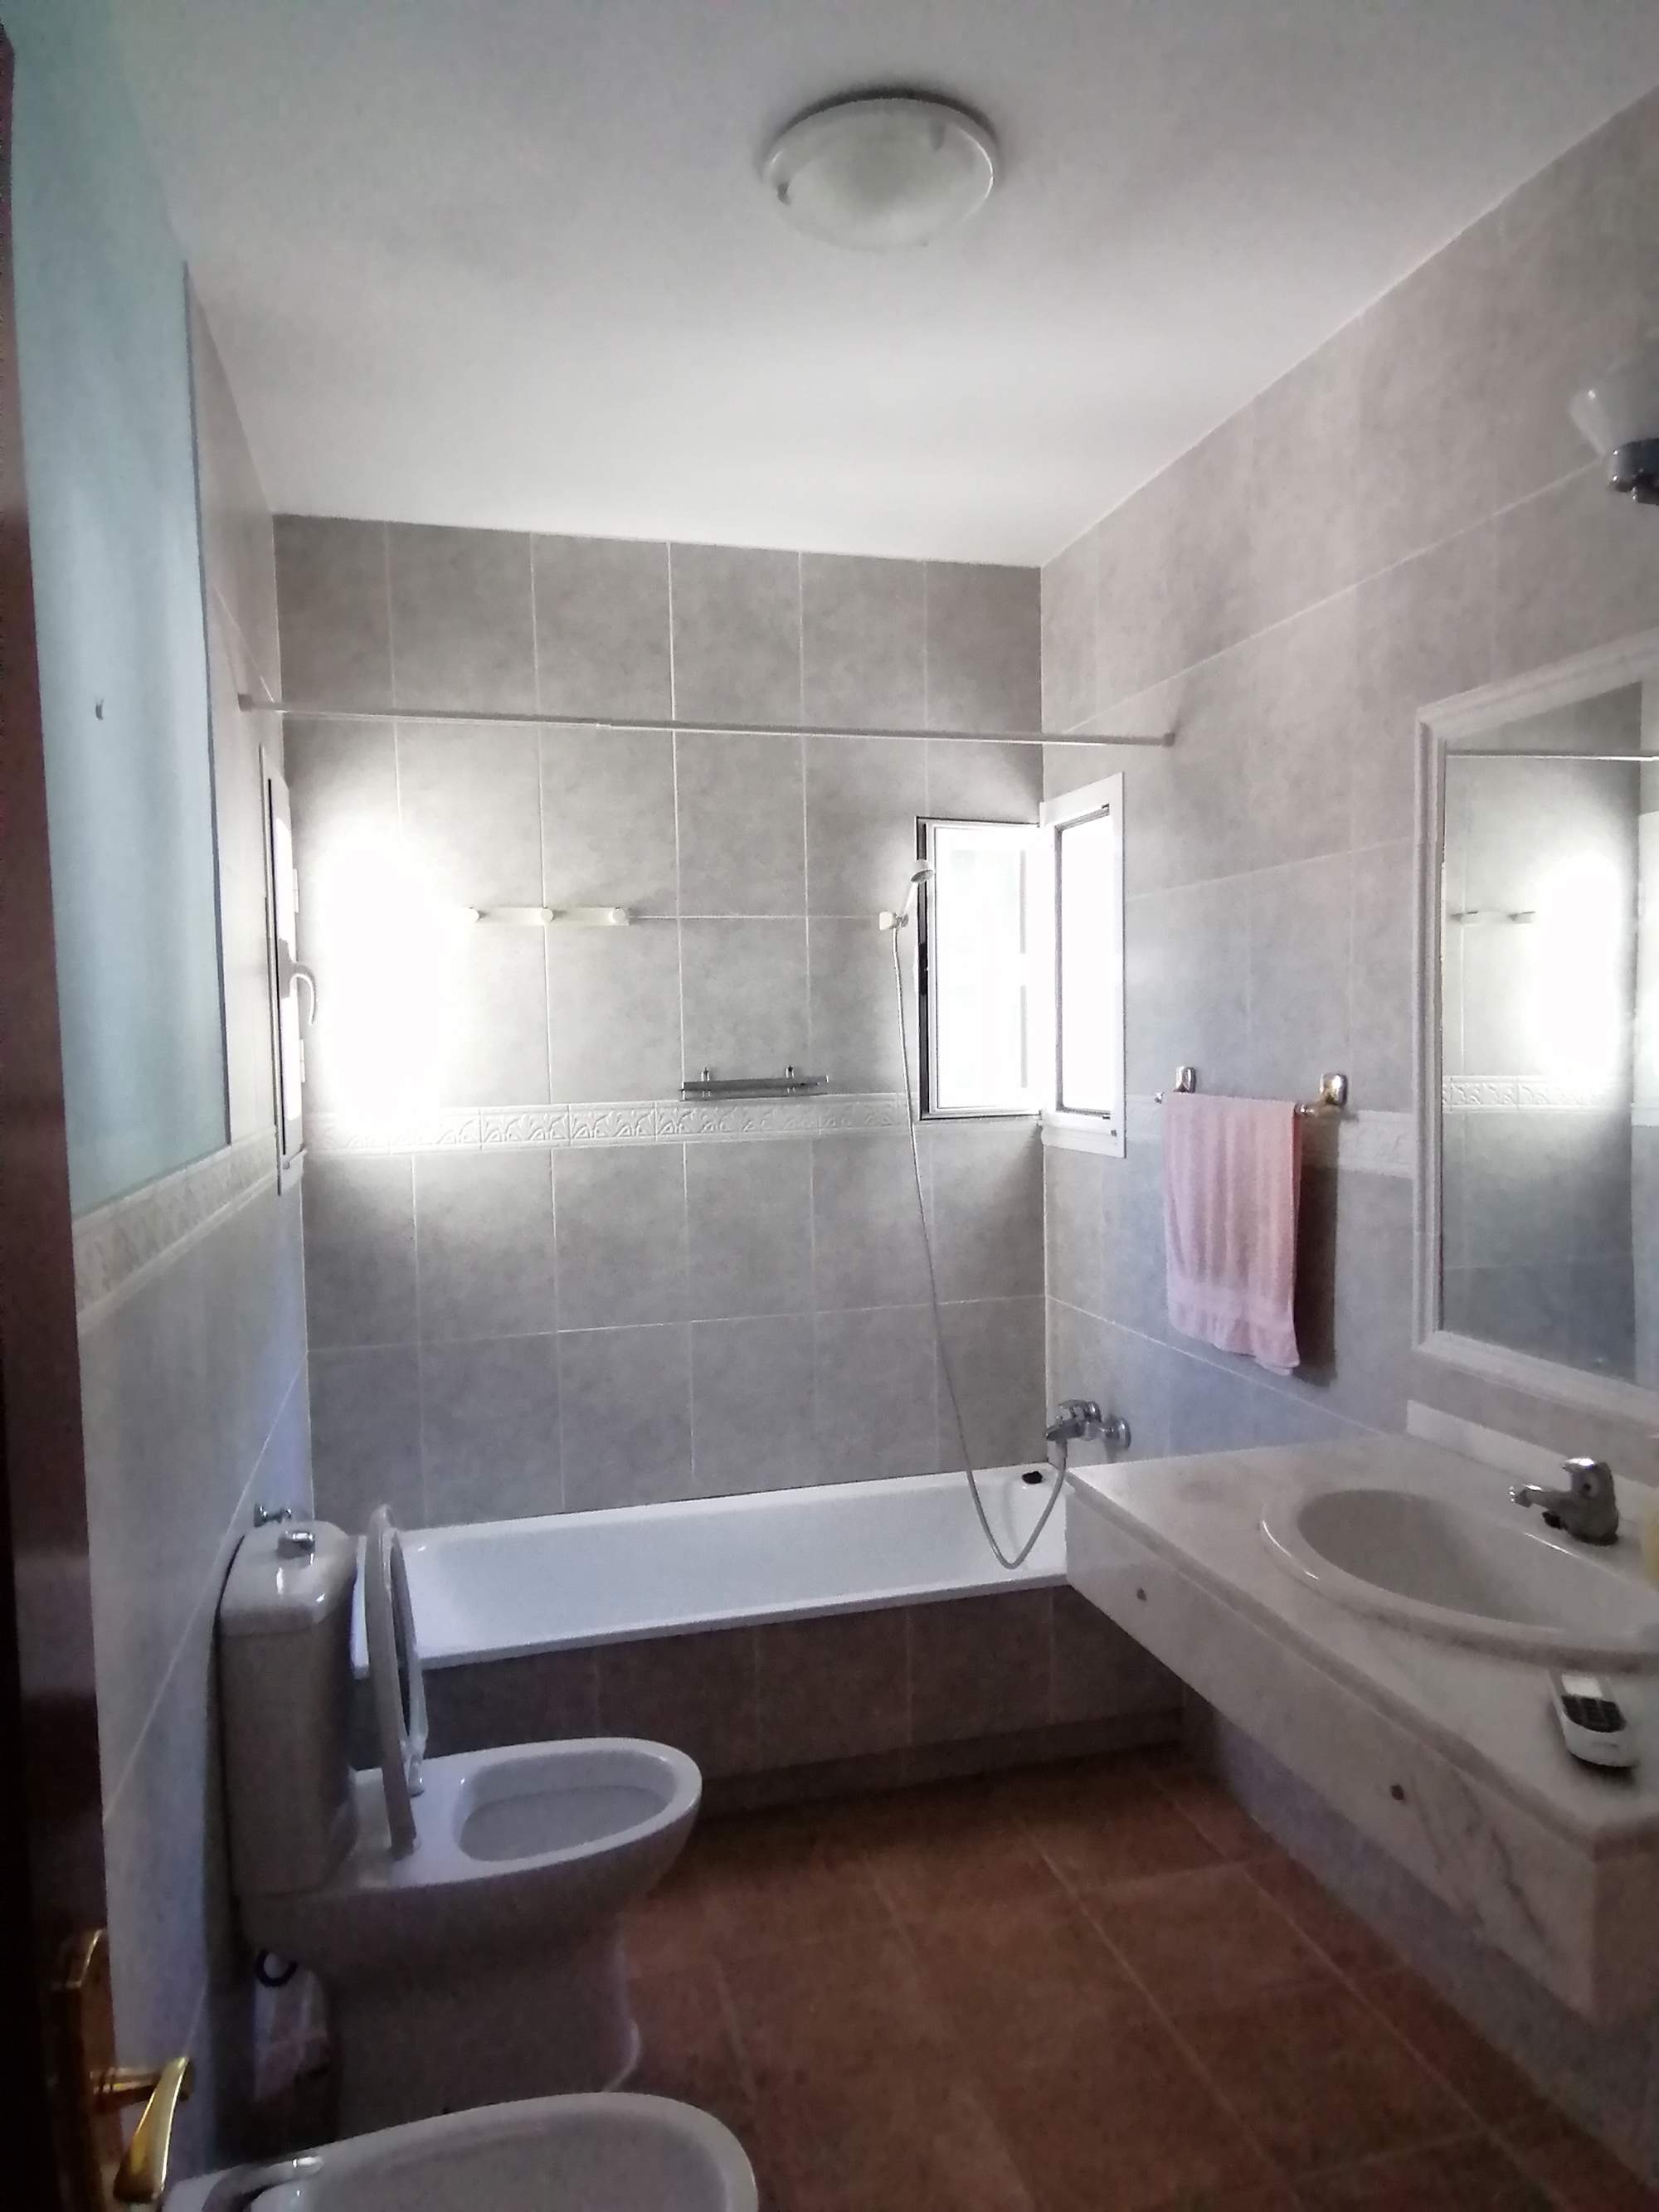 Un baño principal con baldosas en suelo y paredes, lavabo de mármol y apariencia anticuada.